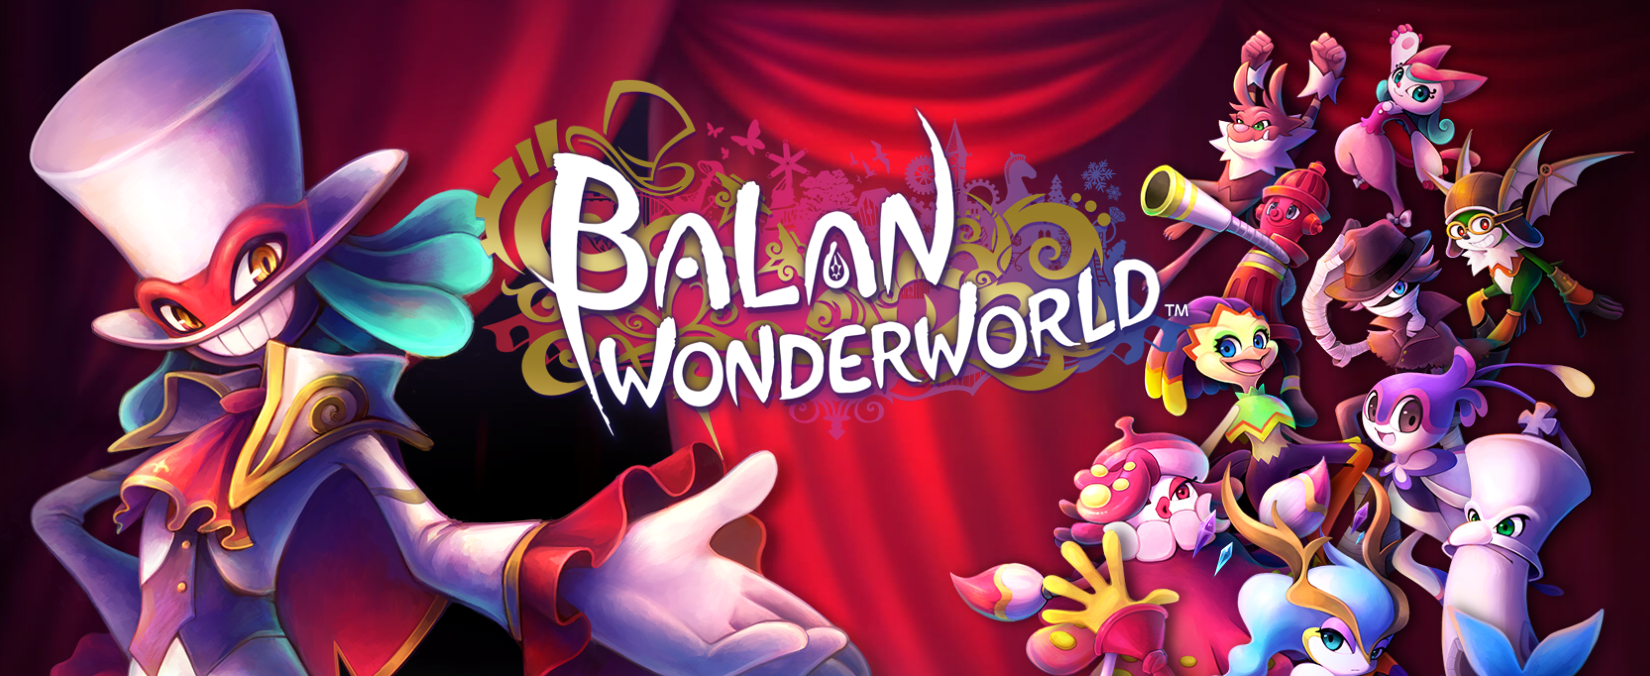 Balan Wonderworld, lo nuevo de Square Enix y el equipo de Sonic